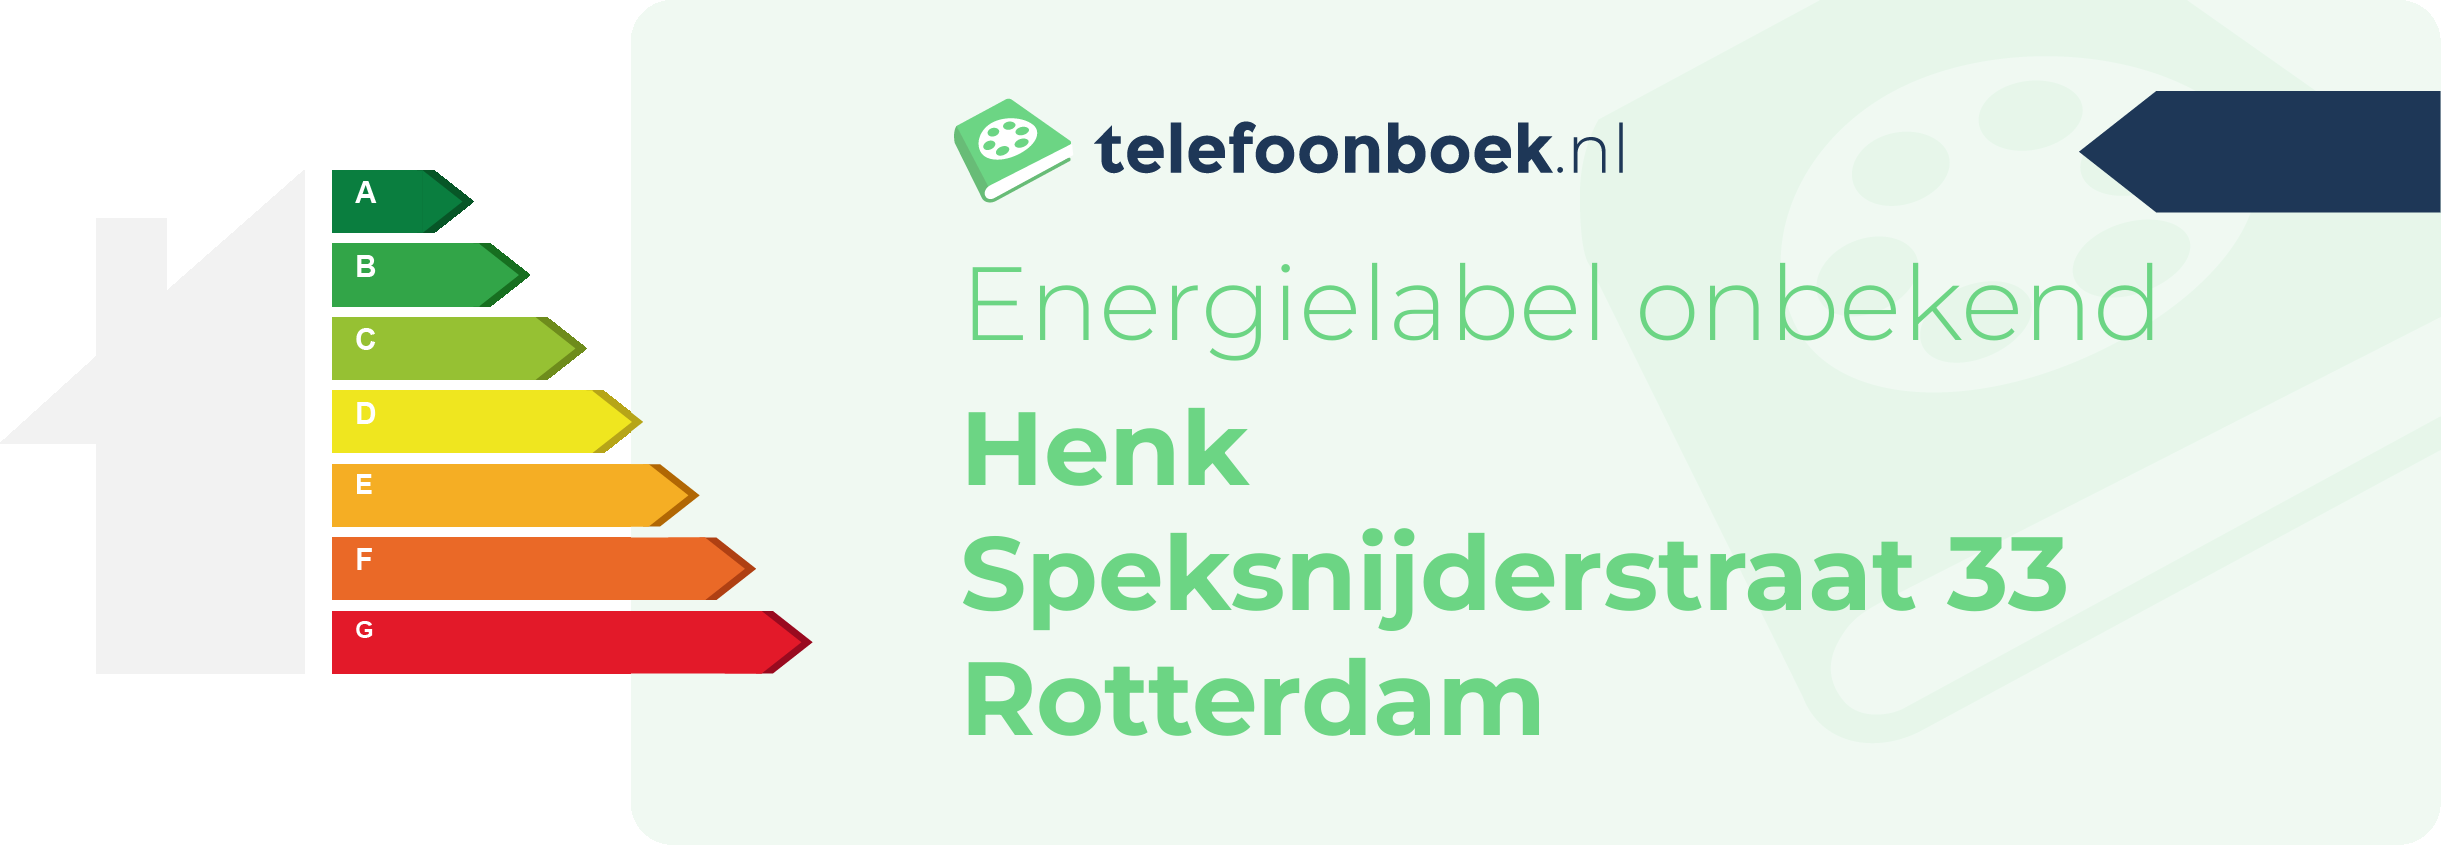 Energielabel Henk Speksnijderstraat 33 Rotterdam